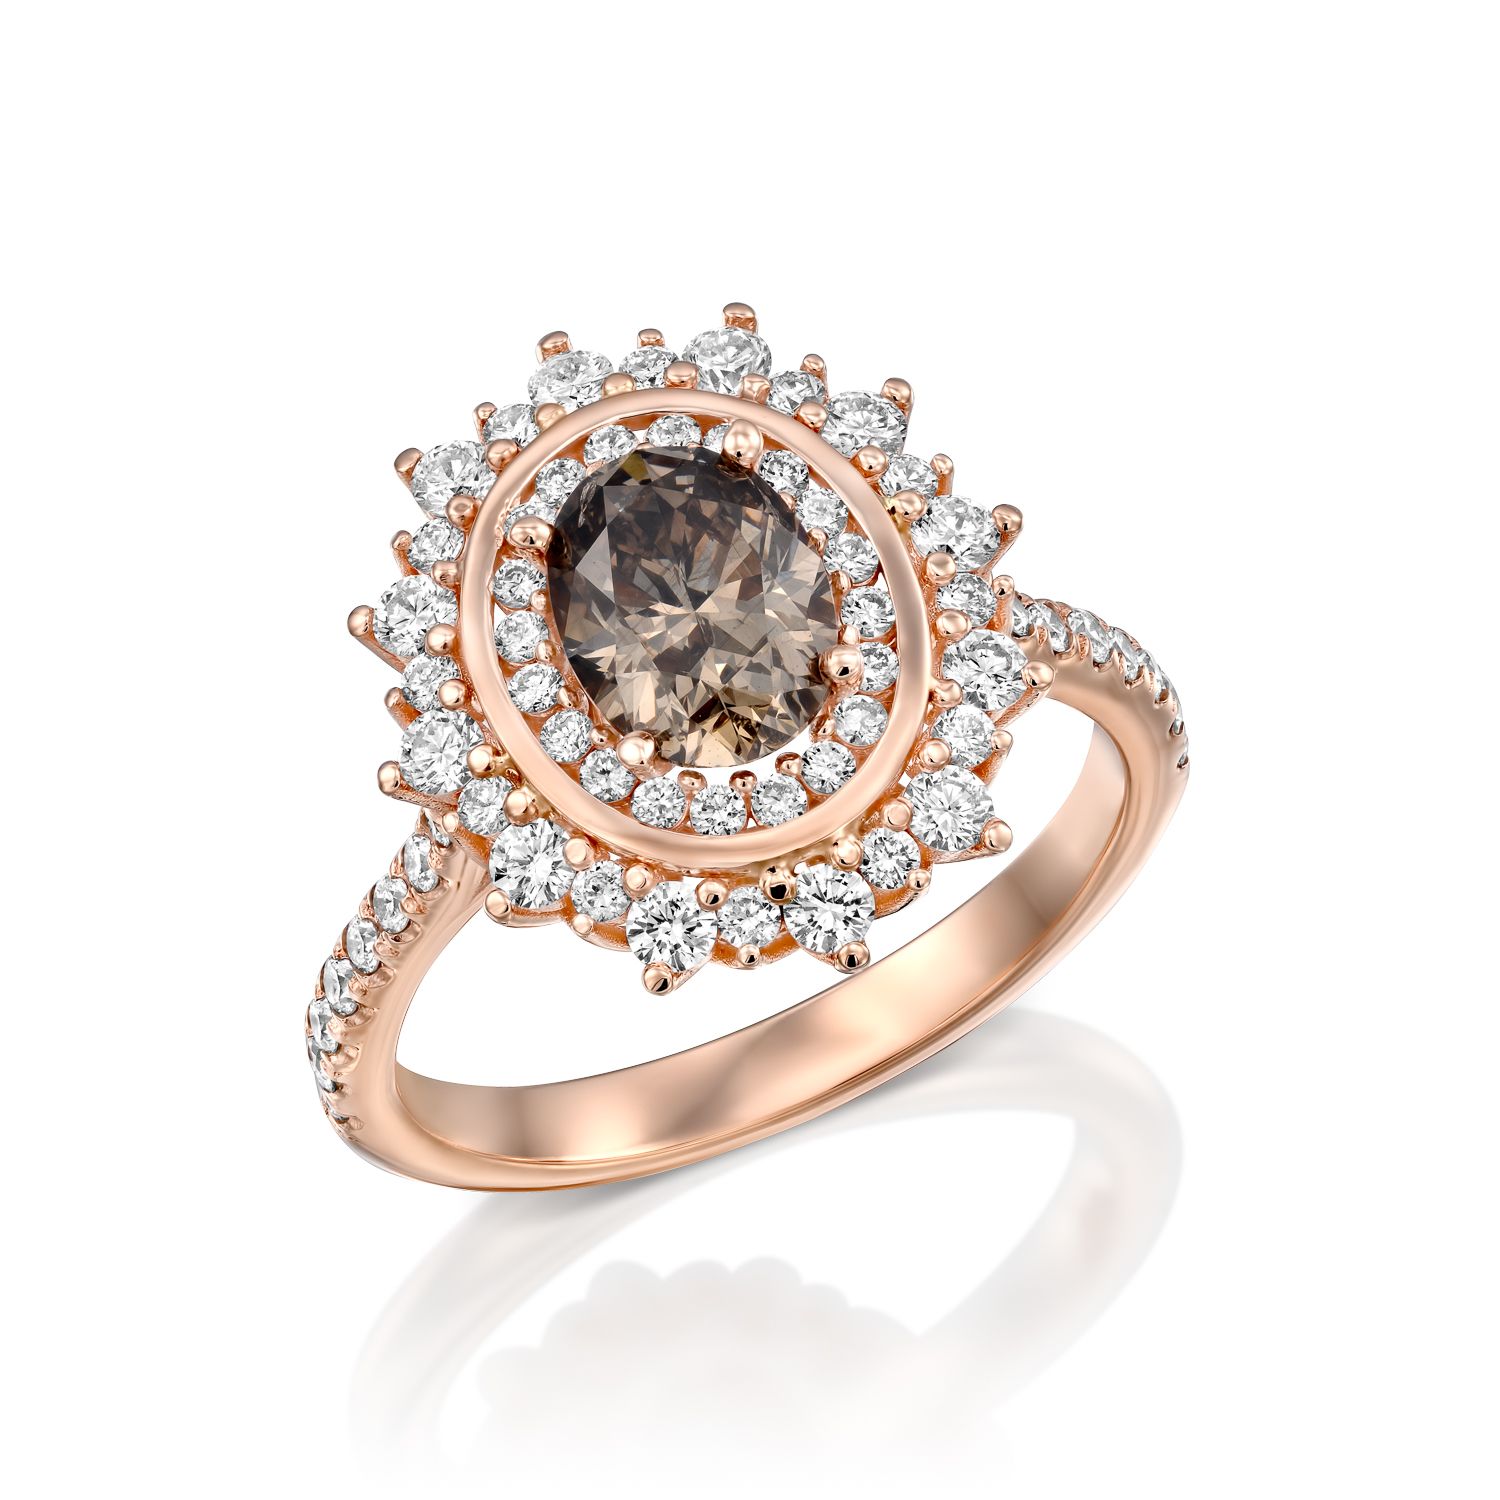 טבעת זהב רוז עם יהלום חום מרכזי מוקף בהילה כפולה של יהלומים קטנים יותר.